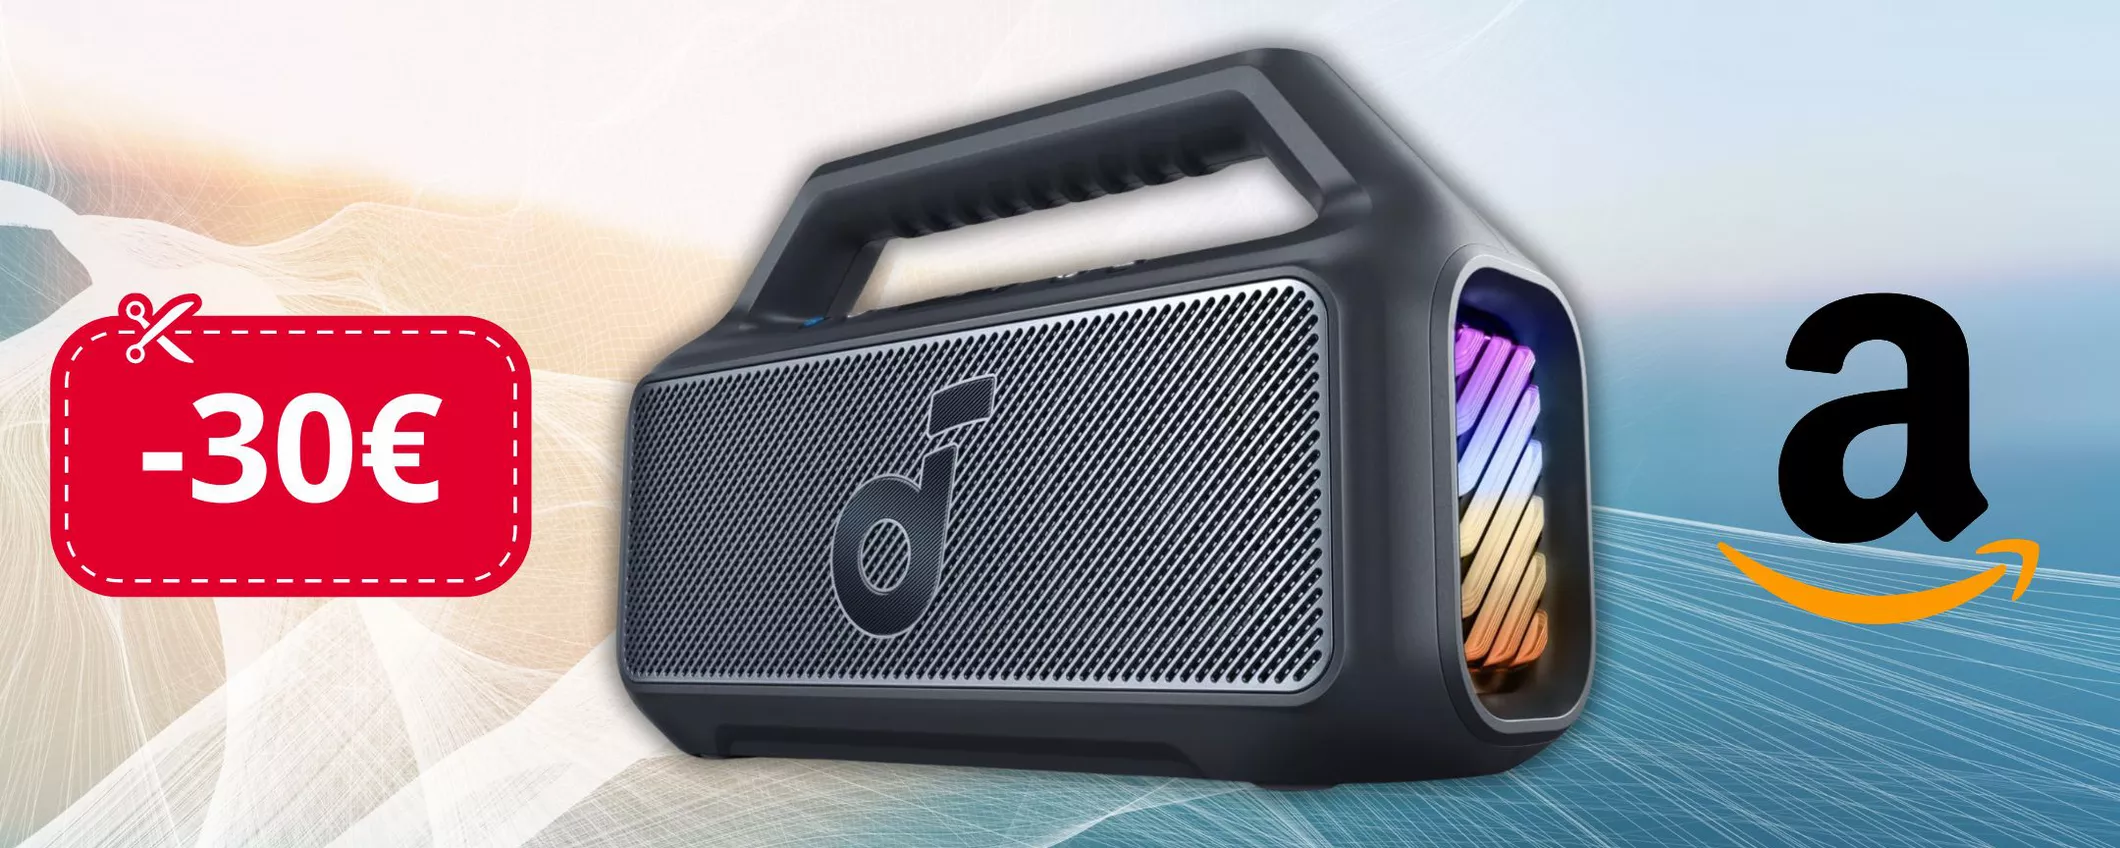 Cassa Bluetooth Soundcore: COUPON che fa CROLLARE il prezzo oggi su Amazon